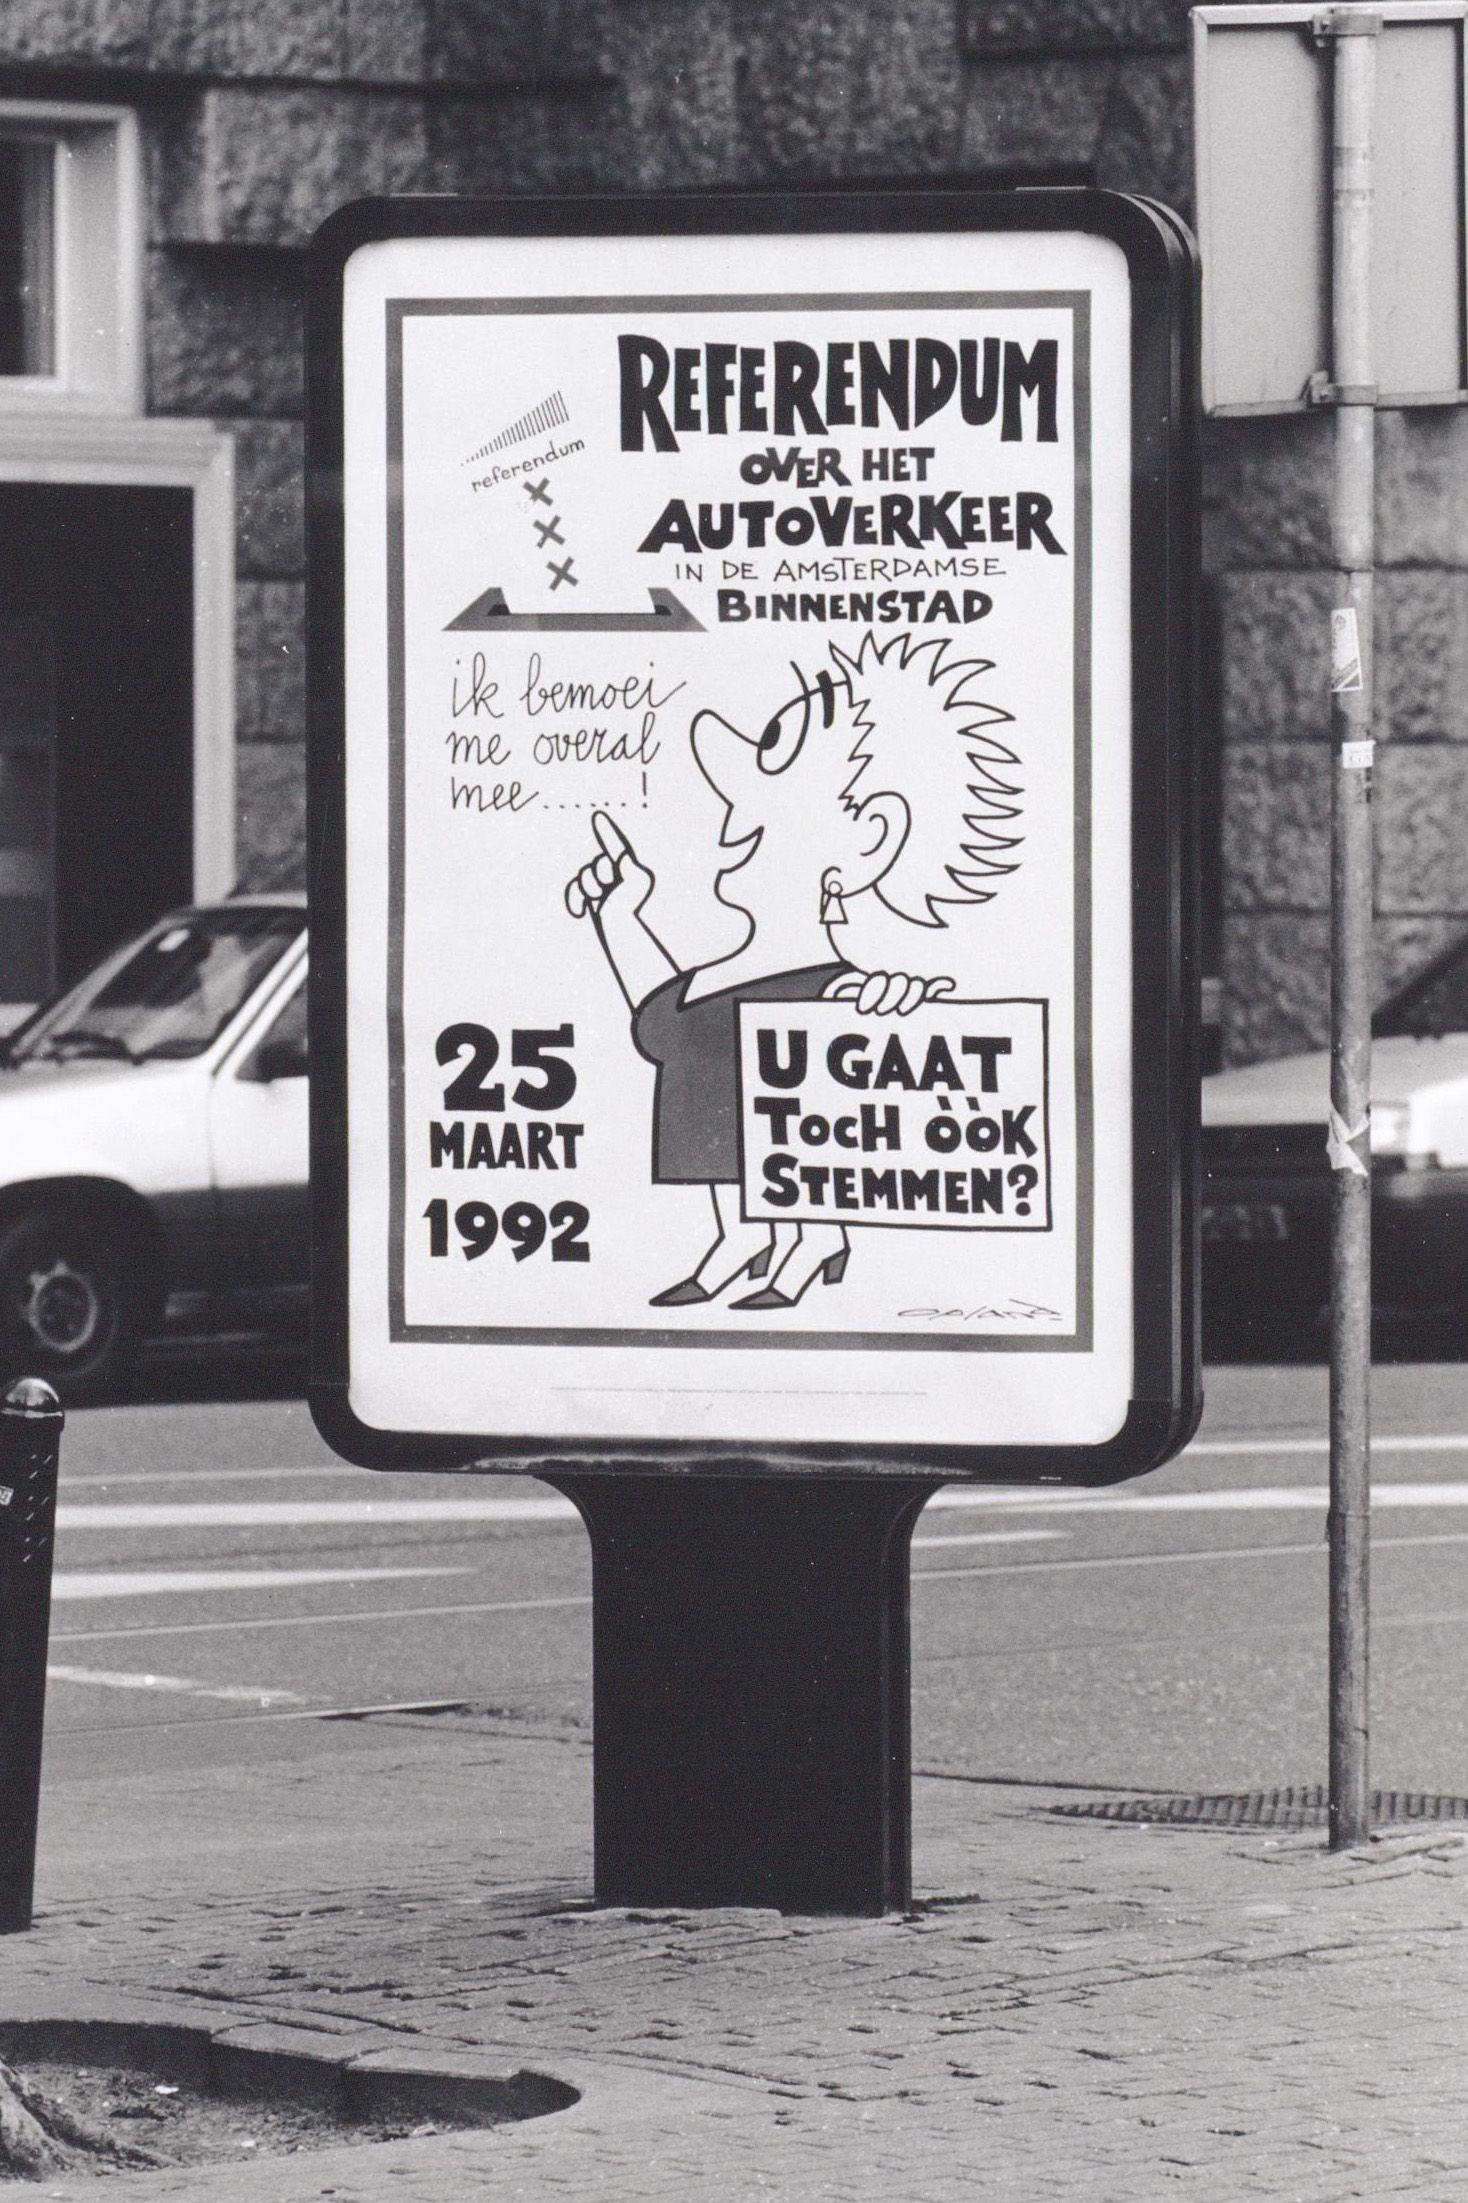 Poster over het Referendum in Amsterdam in verband met eventuele vermindering van het autoverkeer, 1992.